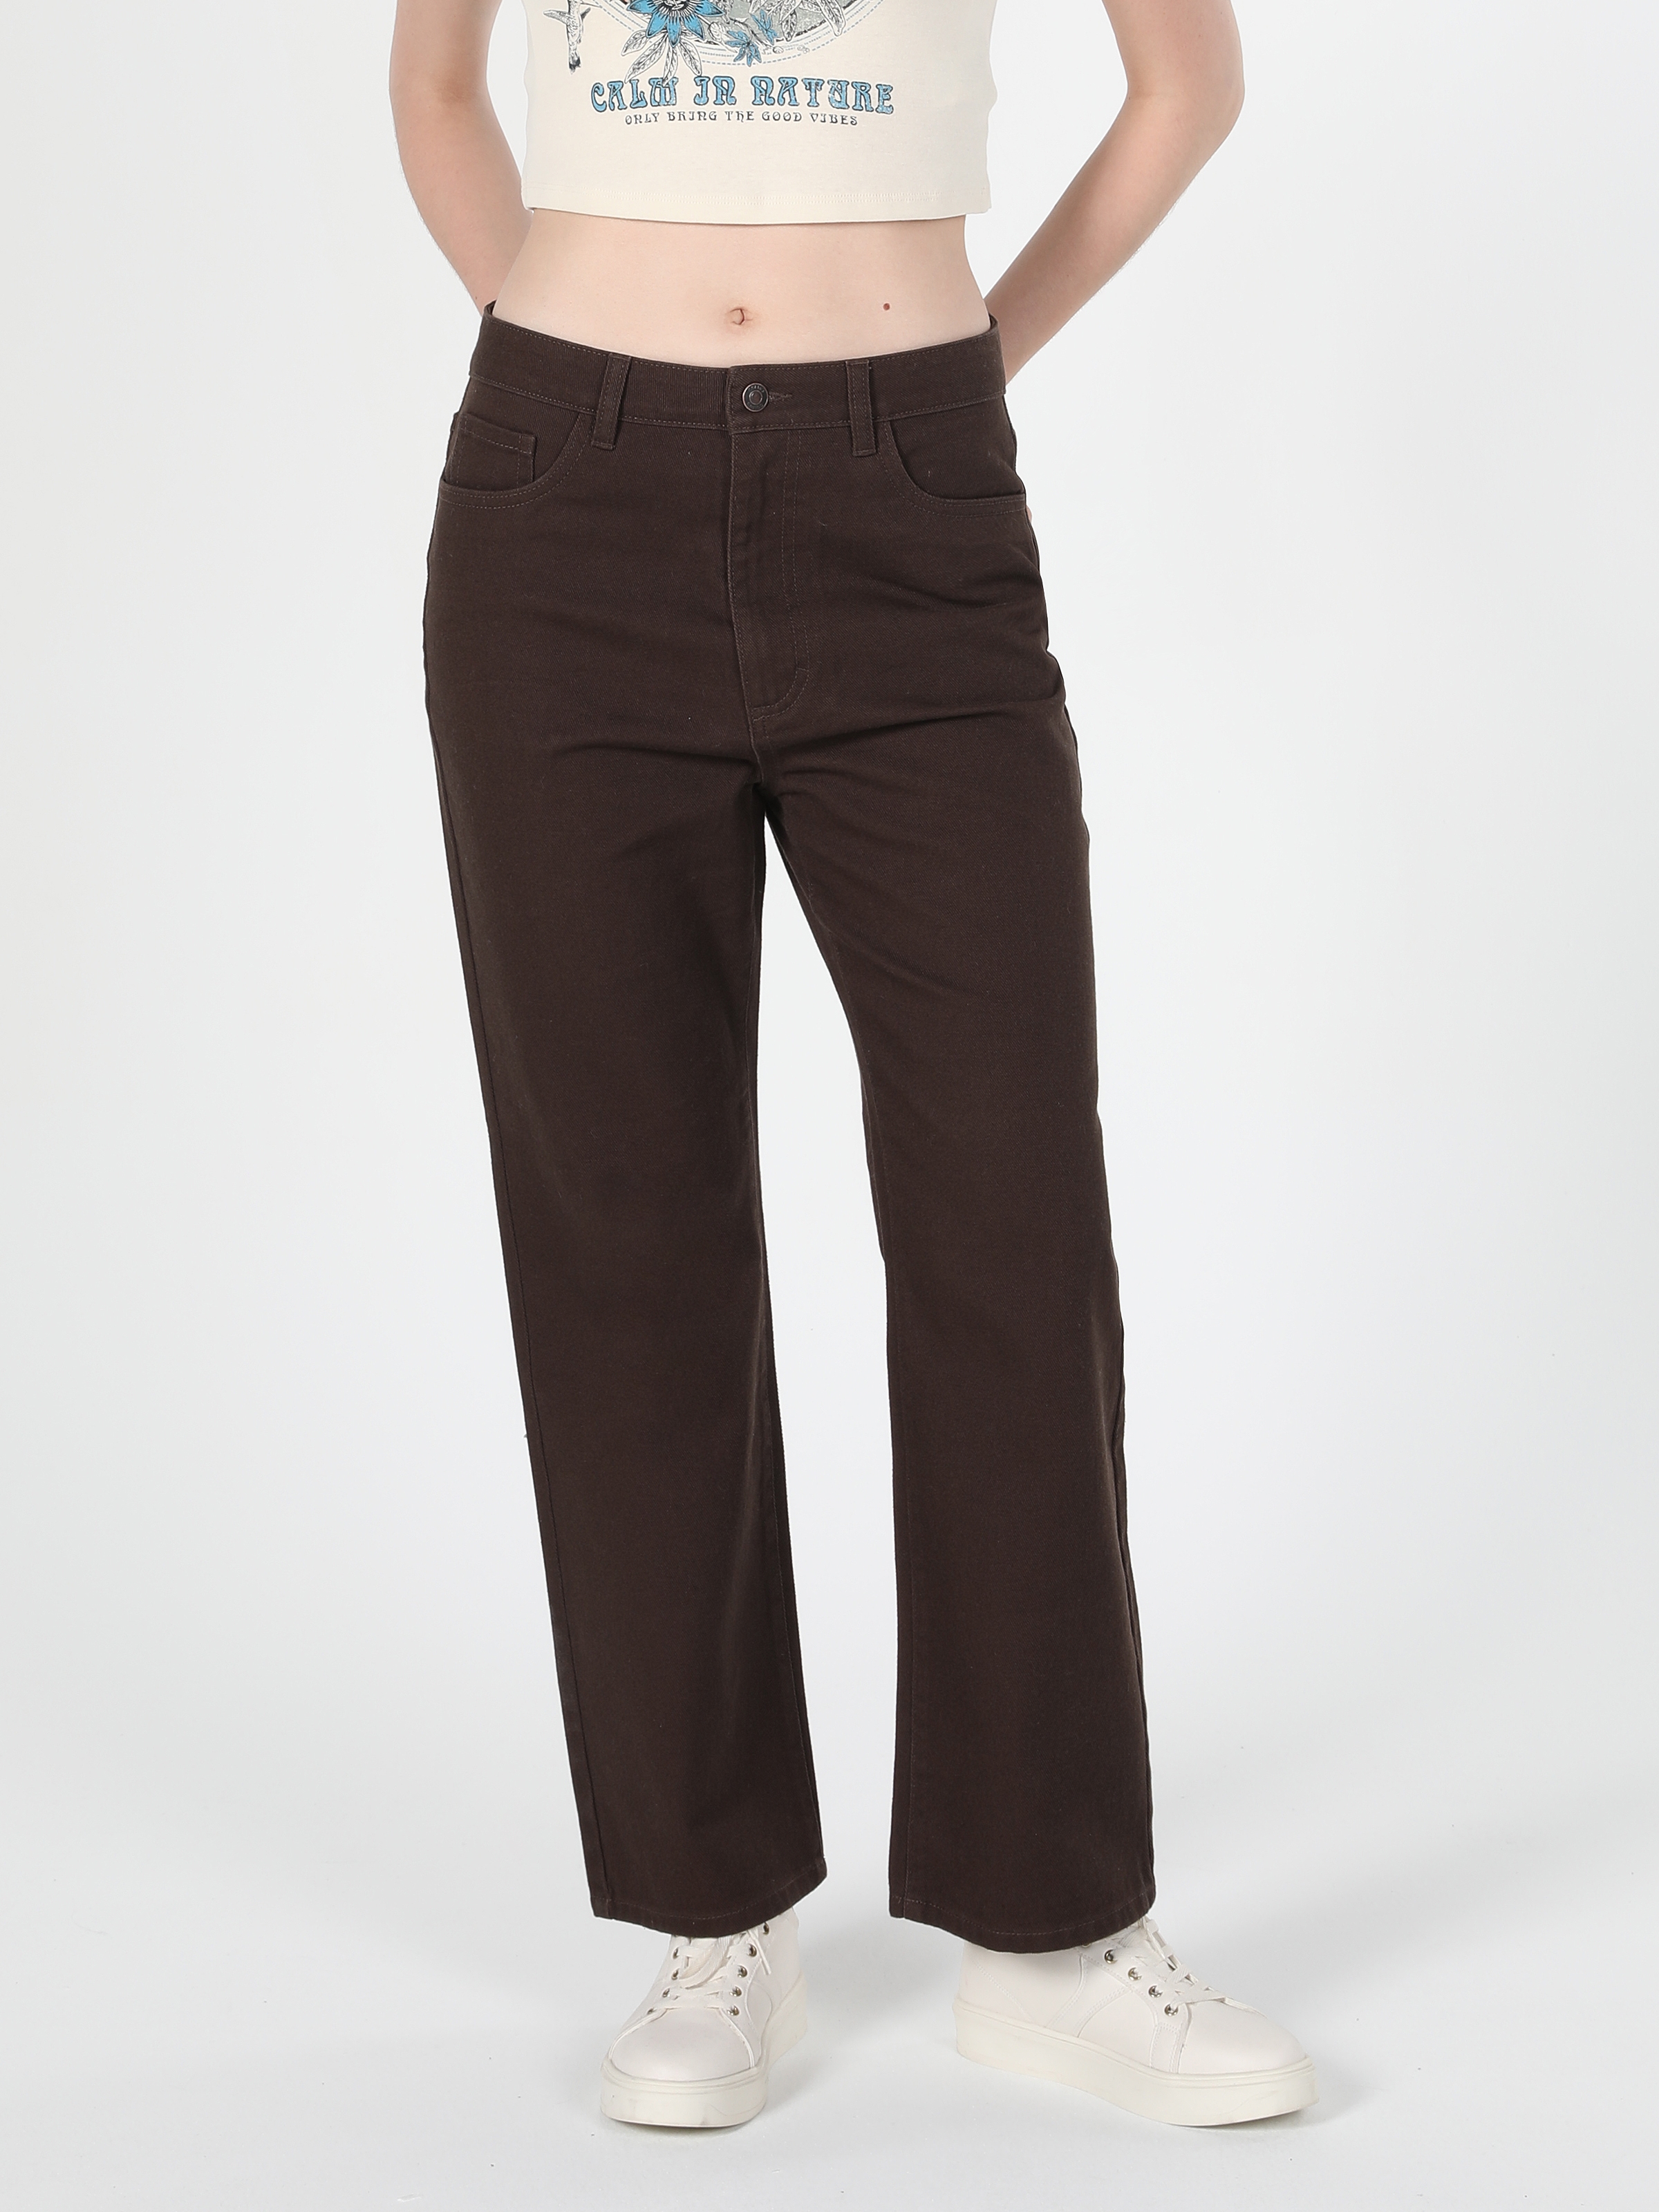 Afficher les détails de Pantalon Femme Marron Taille Haute Coupe Regular Jambe Large